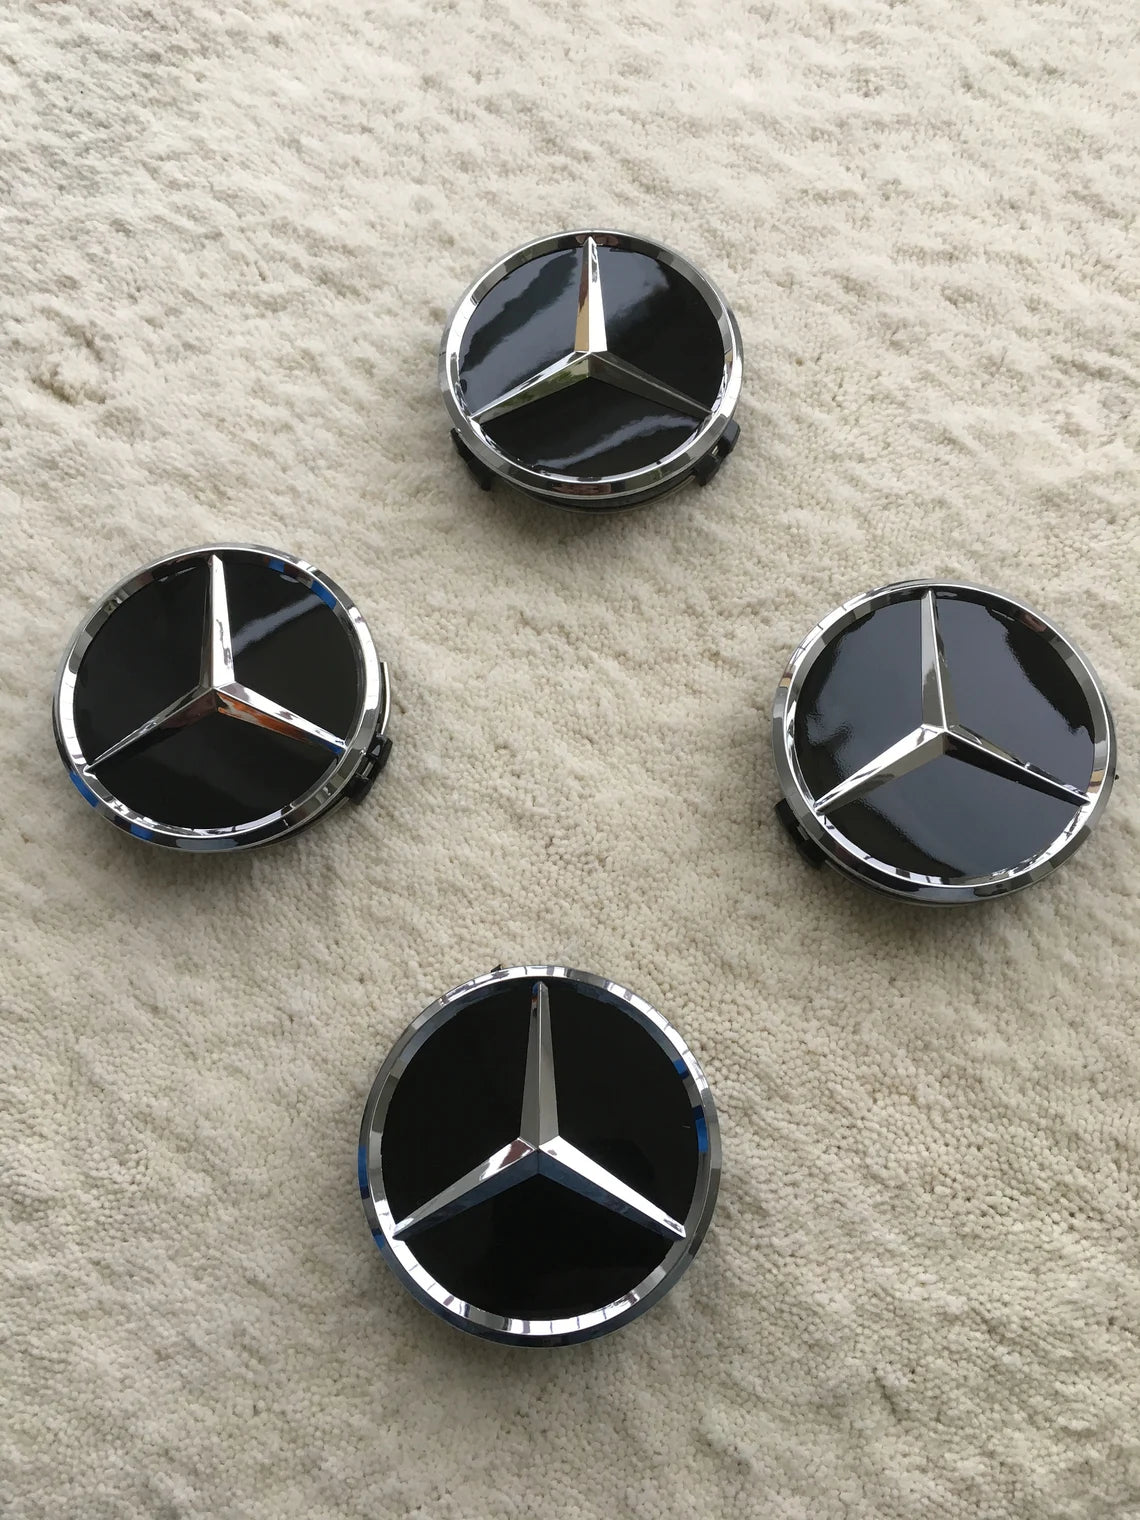 Mercedes benz domed sticker badge decal 3d gel overlay car sticker 65x16mm  x2